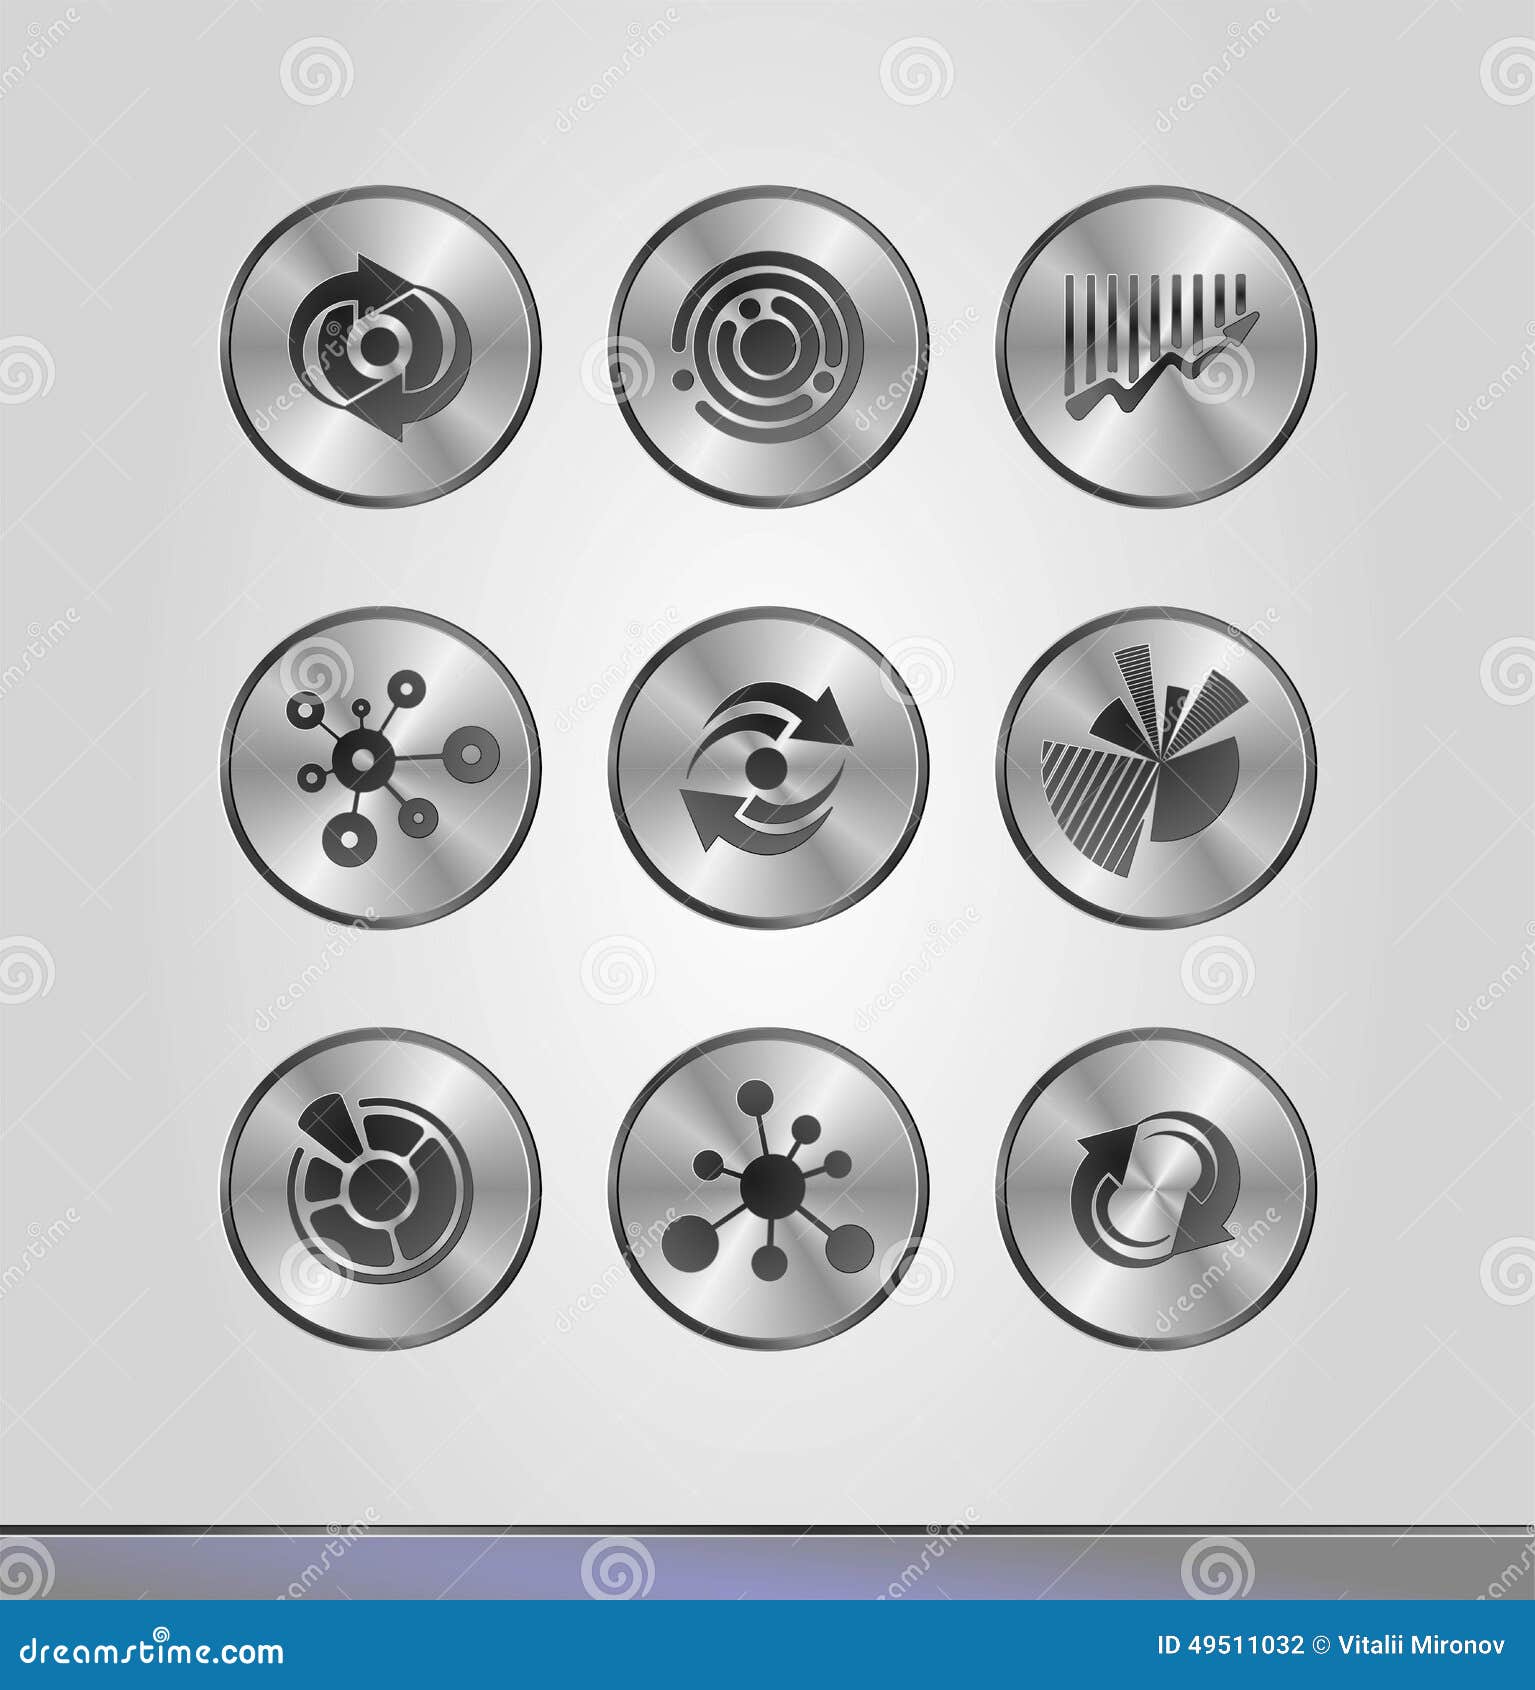 Серебряные значки дела. Vector иллюстрация серебряных значков дела в круглых рамках